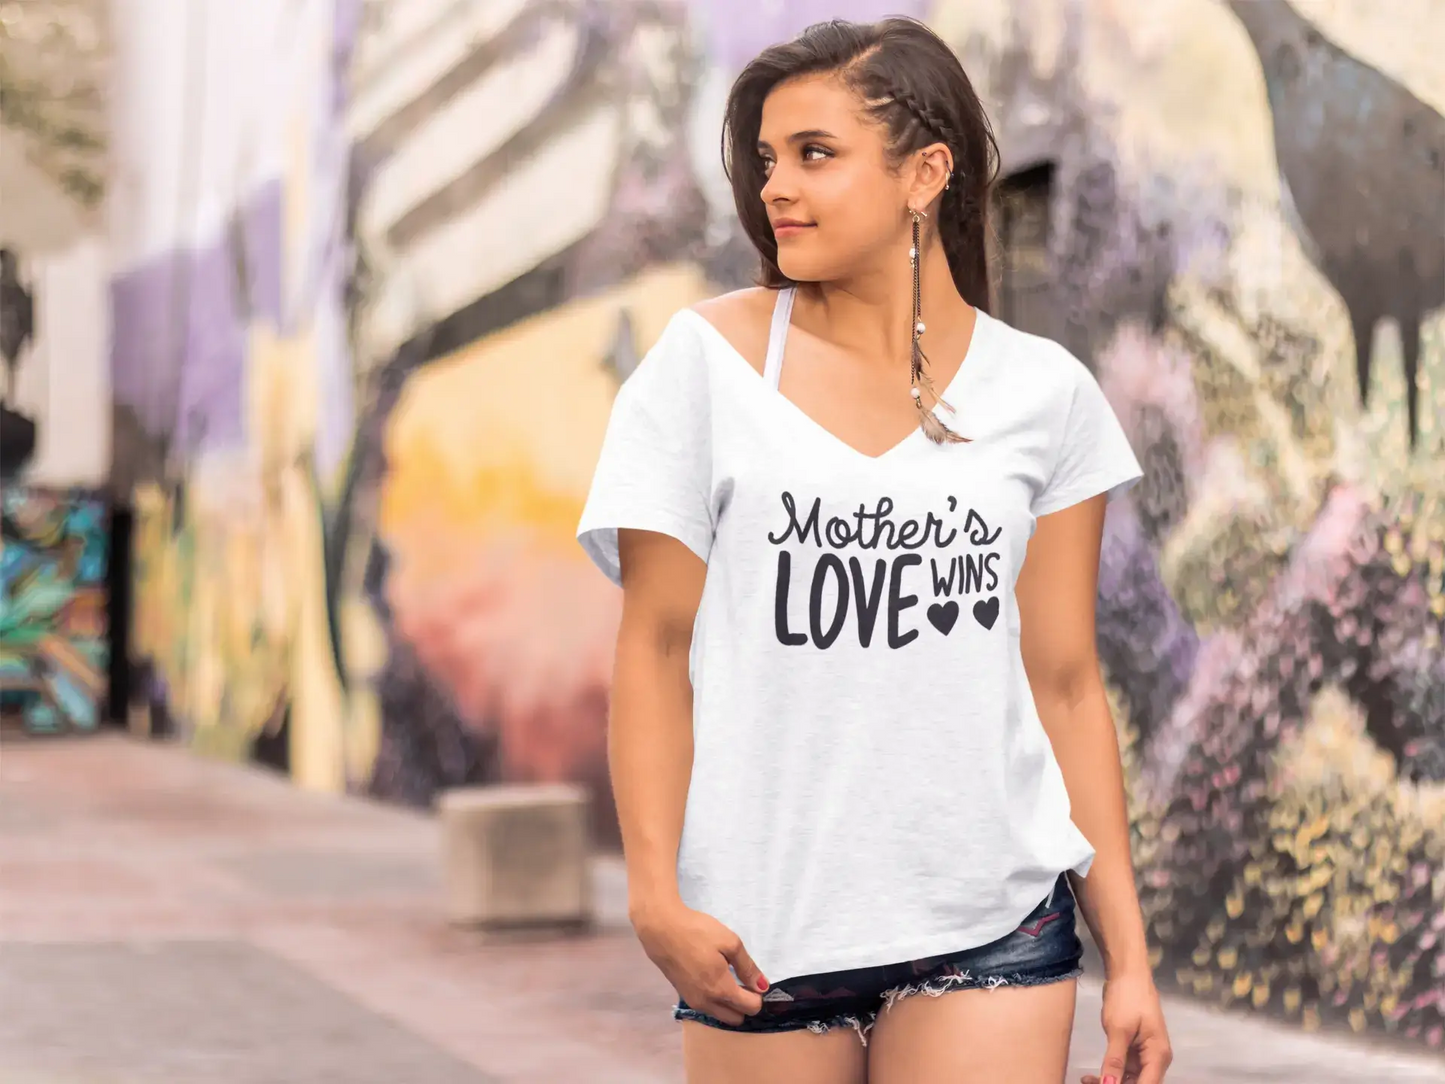 ULTRABASIC Women's T-Shirt Mother's Love Wins - Short Sleeve Tee Shirt Tops